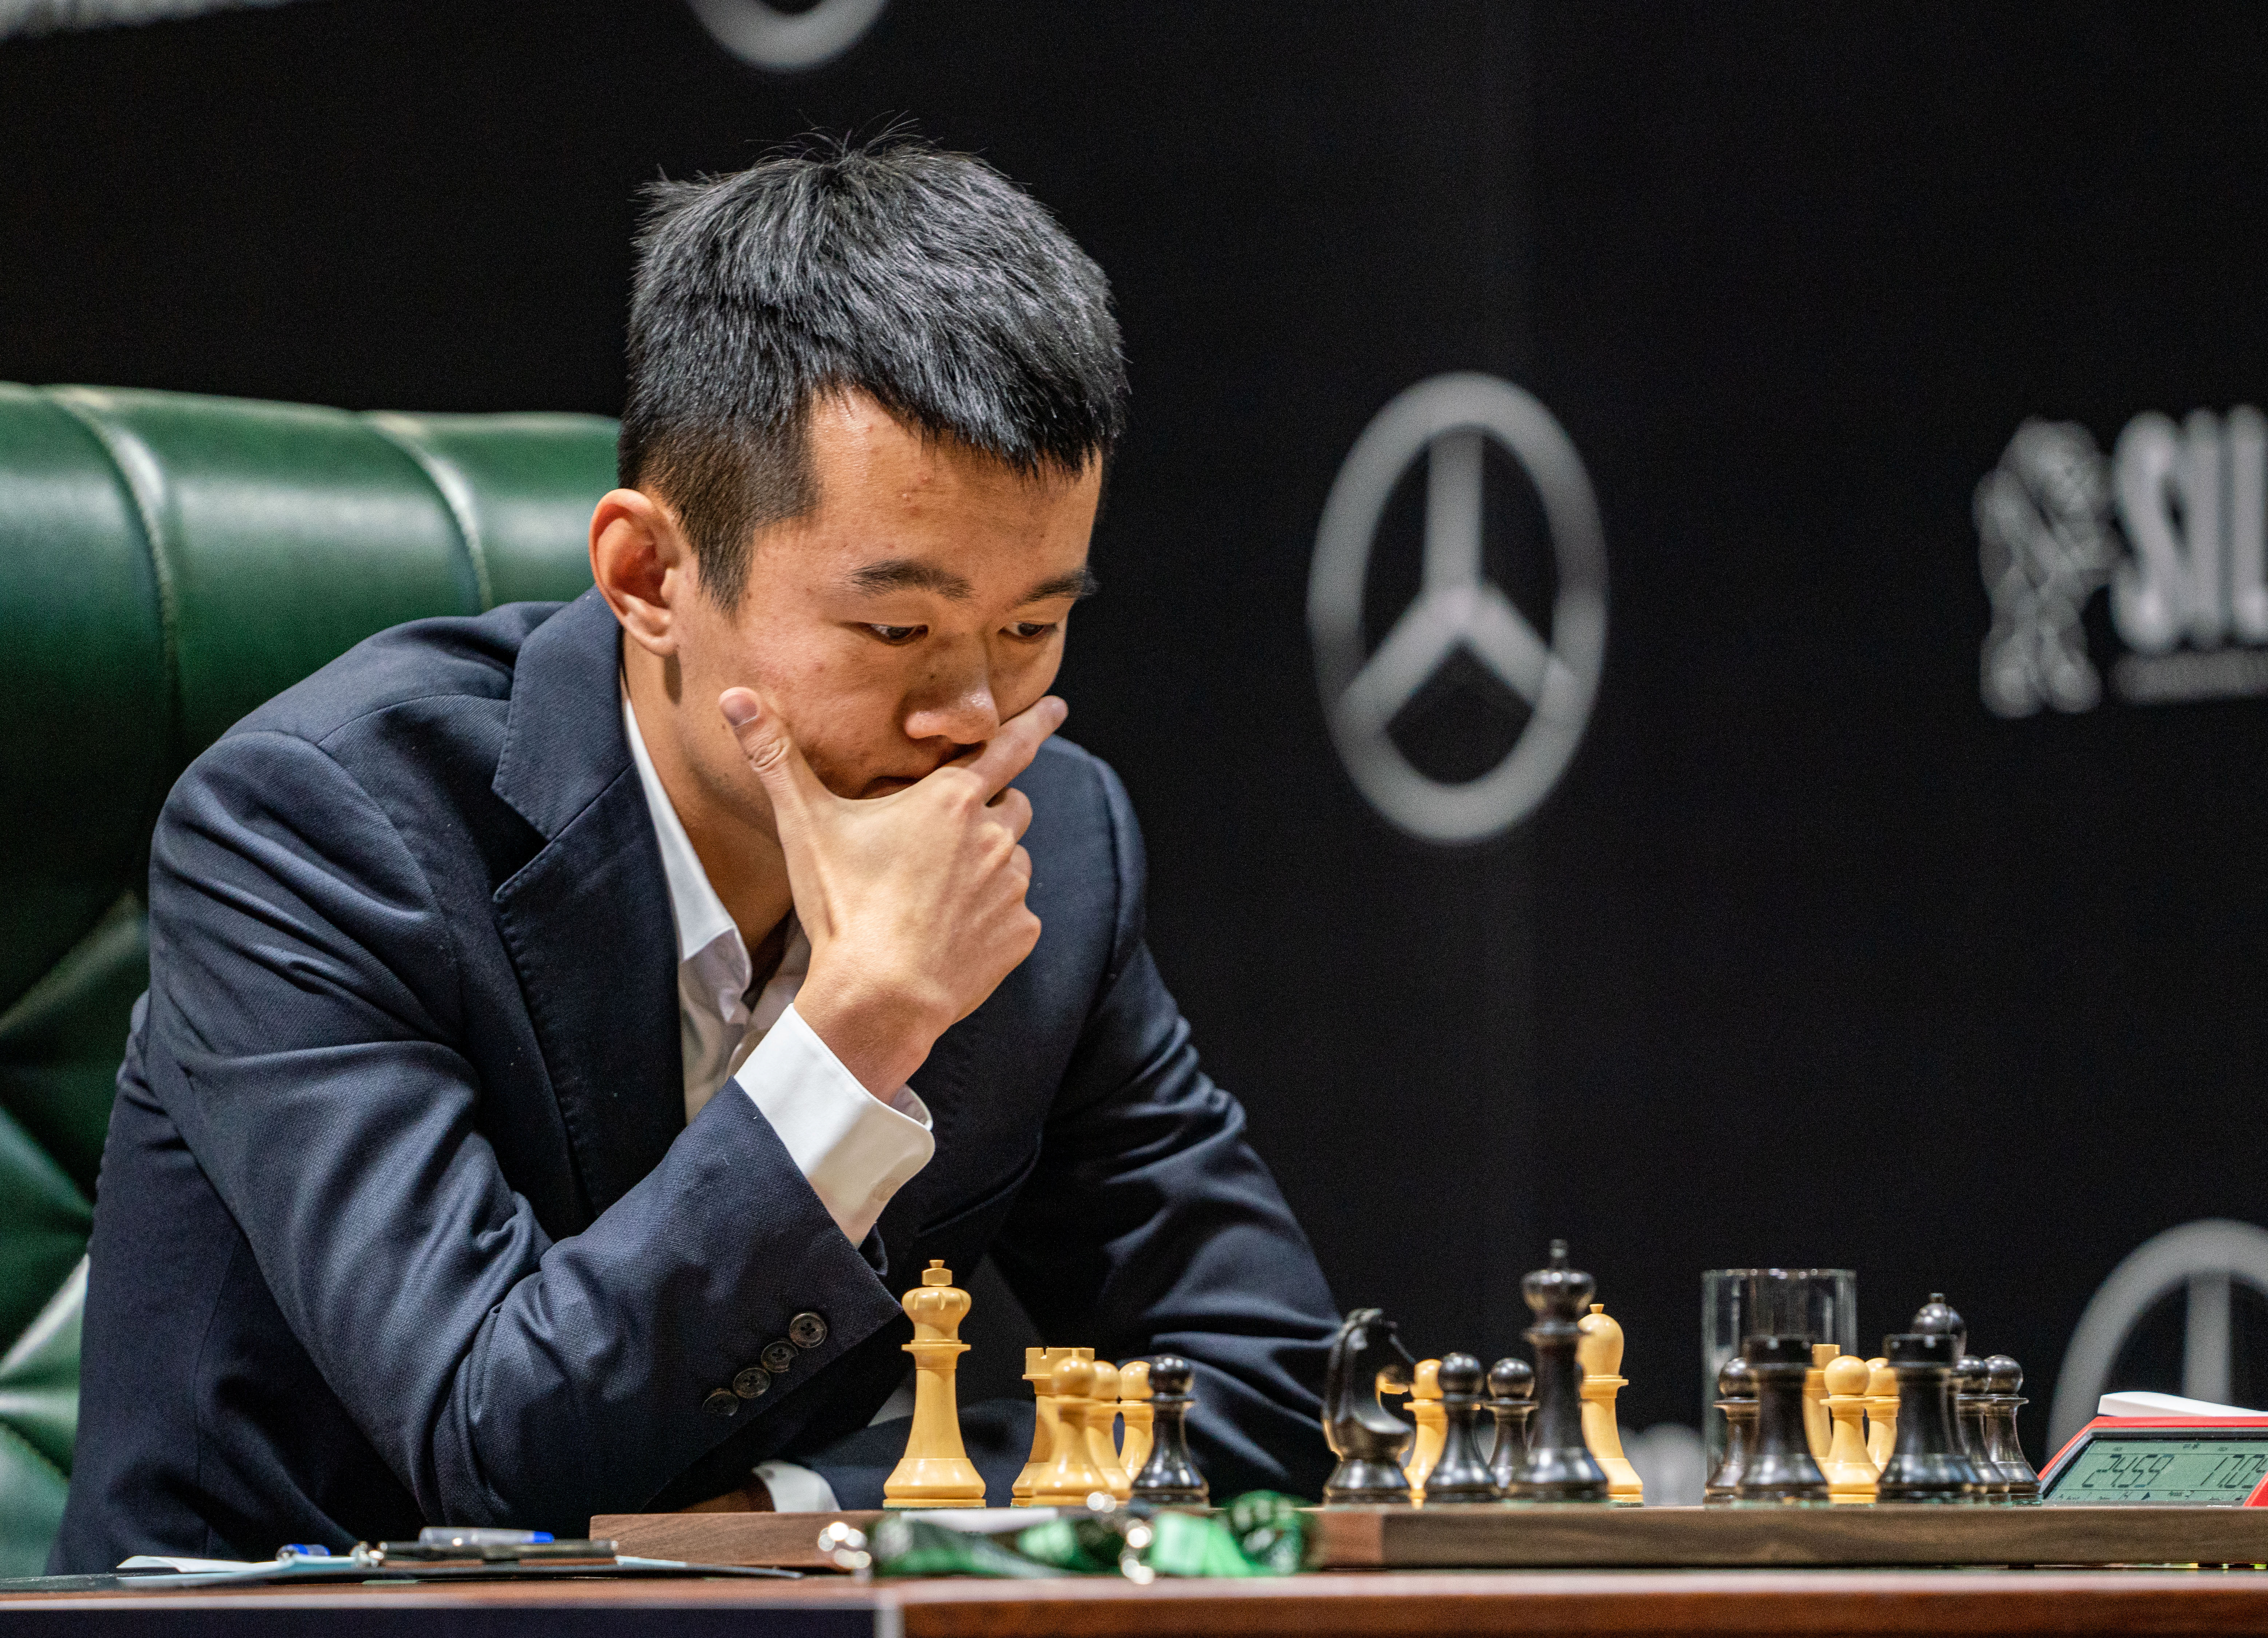 El chino Ding Liren es uno de los candidatos a ganar el torneo